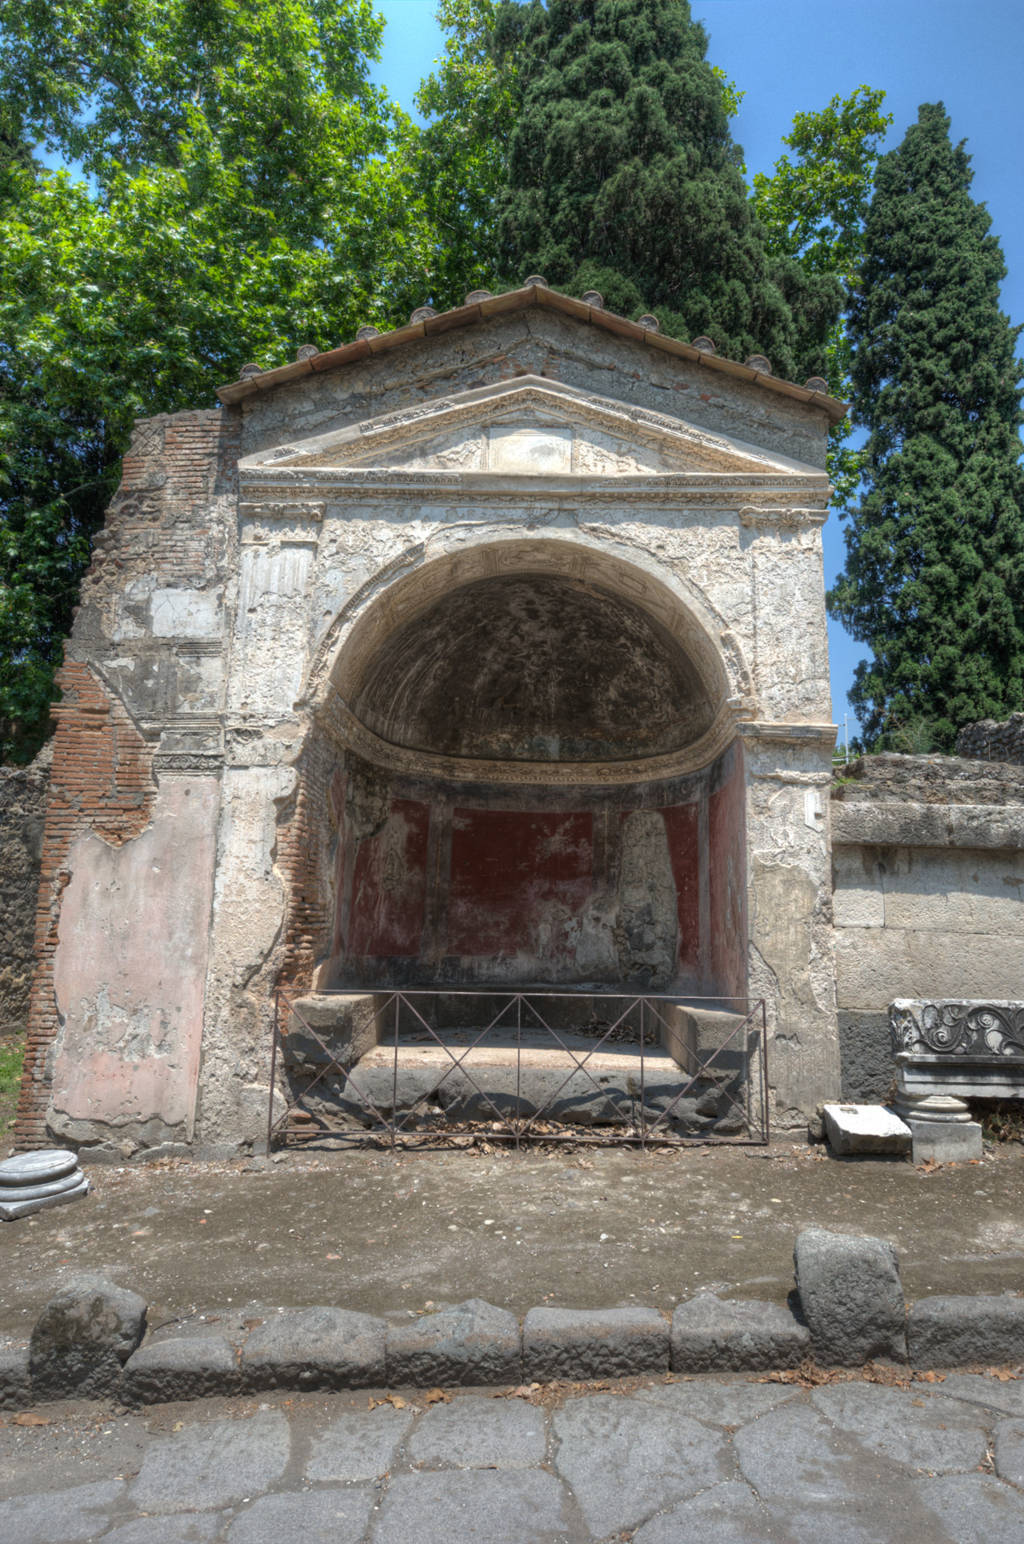 Porta Ercolano Gate and Necropolis